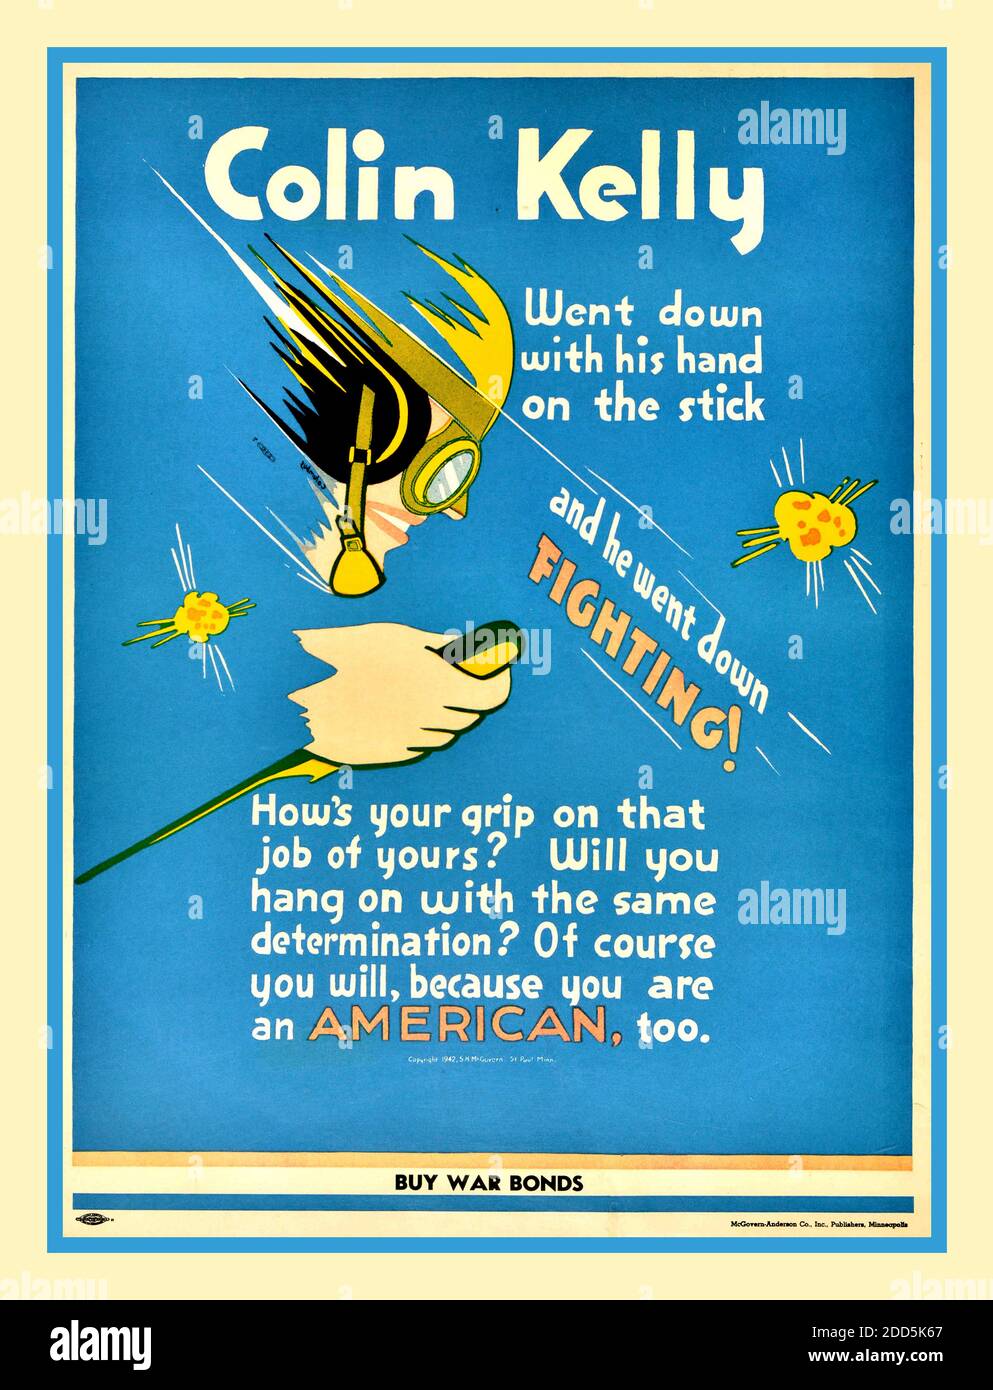 VINTAGE ARCHIV KRIEGSPLAKAT KRIEGSPLAKATE KAUFEN COLIN KELLY BOMBER PILOT HOME FRONT WW2 USA Vintage Propaganda Poster, das während des Zweiten Weltkriegs in den USA ausgegeben wurde, um den Verkauf von Kriegsplakaten zu fördern. Cartoon-Darstellung des US-Piloten Colin Kelly mit ‘Colin Kelly ging Down mit der Hand auf dem Stock, und Er ging Down kämpfen! Wie ist Ihr Griff auf diese Arbeit von Ihnen? " ‘wirst du mit der gleichen Entschlossenheit hängen?’ ‘natürlich wirst du, weil du auch Amerikaner bist’. Gedruckt bei McGovern-Anderson Co. Colin Purdie Kelly Jr. (11. Juli 1915 – 10. Dezember 1946 Stockfoto